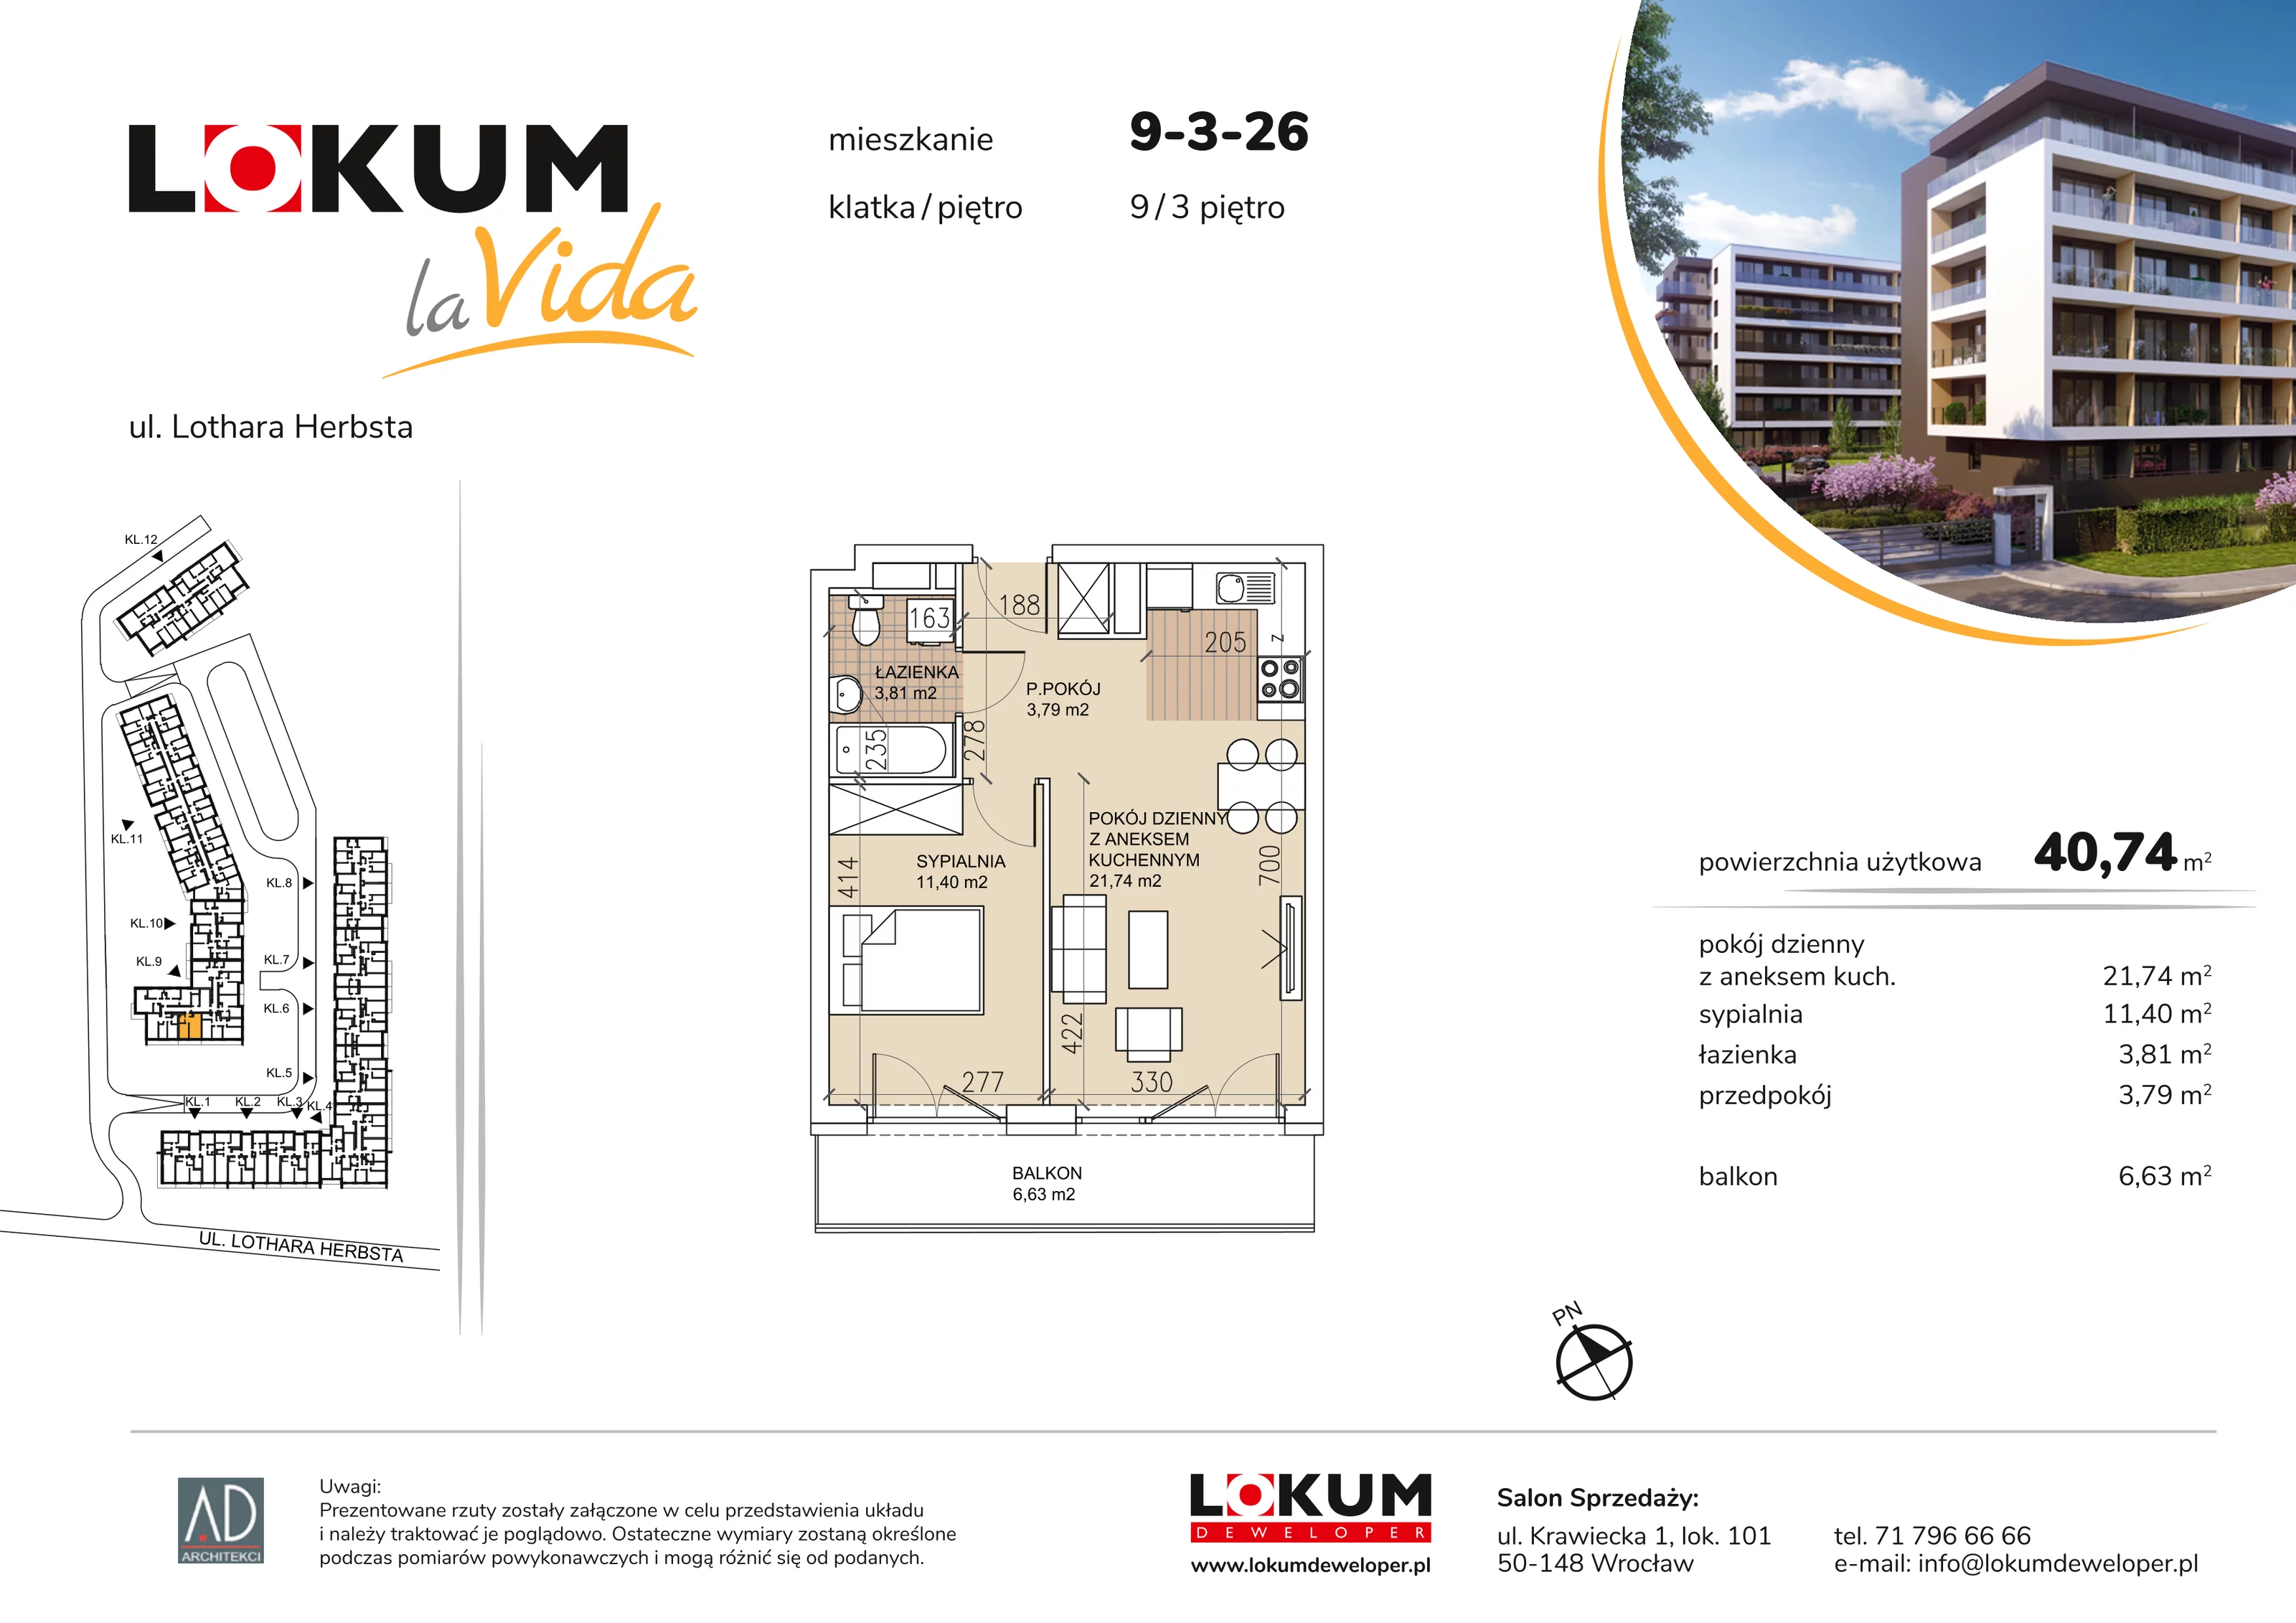 Mieszkanie 40,74 m², piętro 3, oferta nr 9-3-26, Lokum la Vida, Wrocław, Sołtysowice, ul. Lothara Herbsta